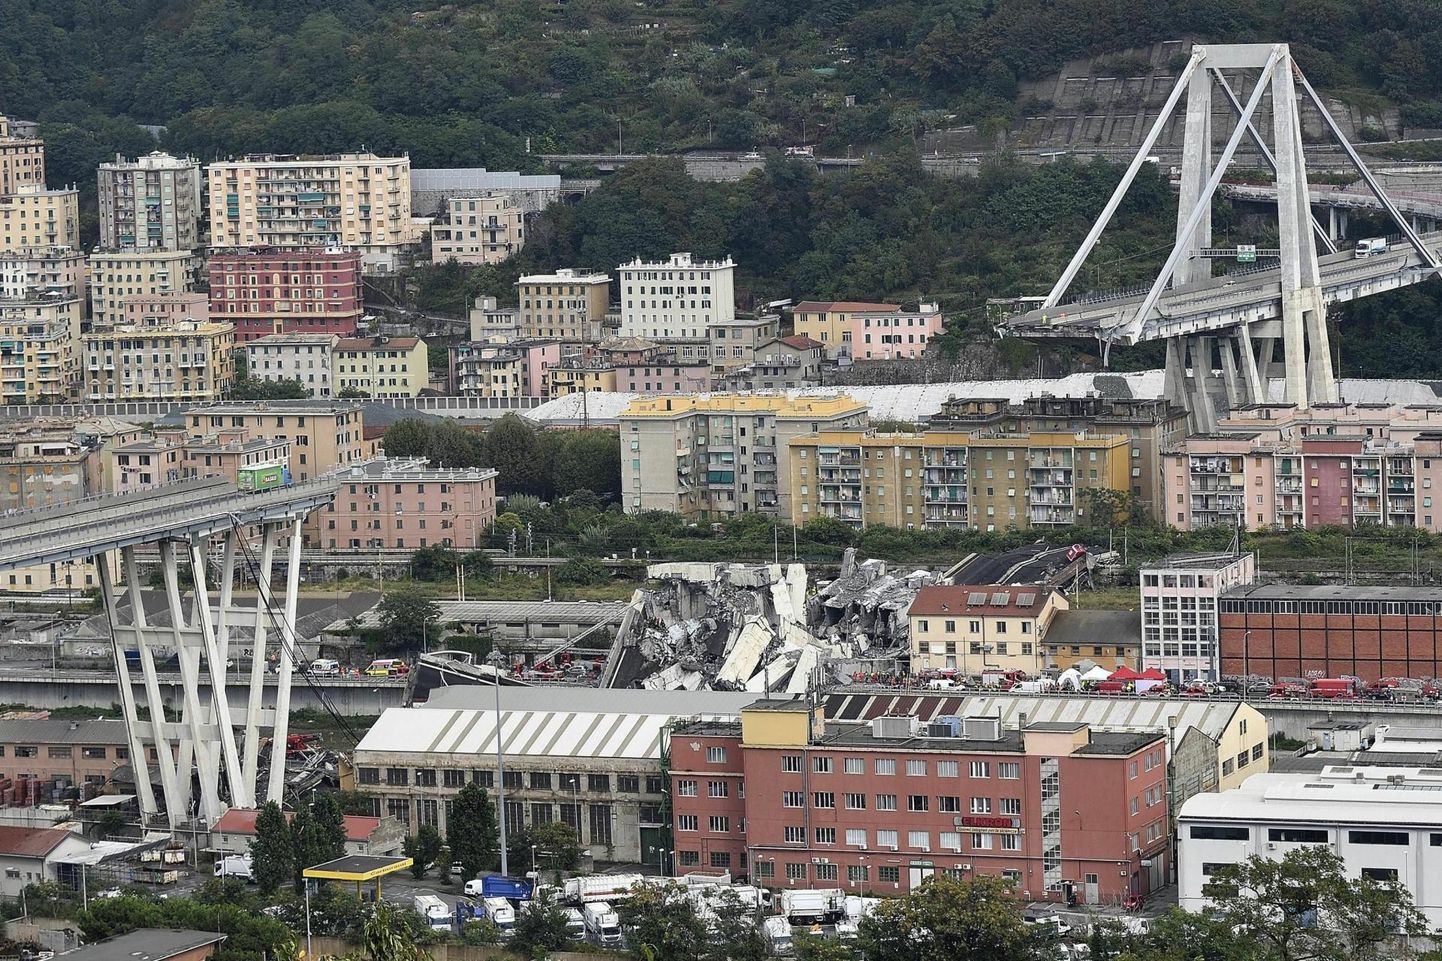 Genovas üle Polcevera jõe kulgenud Morandi sild varises kokku 14. augustil 2018 puuduliku hooldamise ja remondi tõttu. 